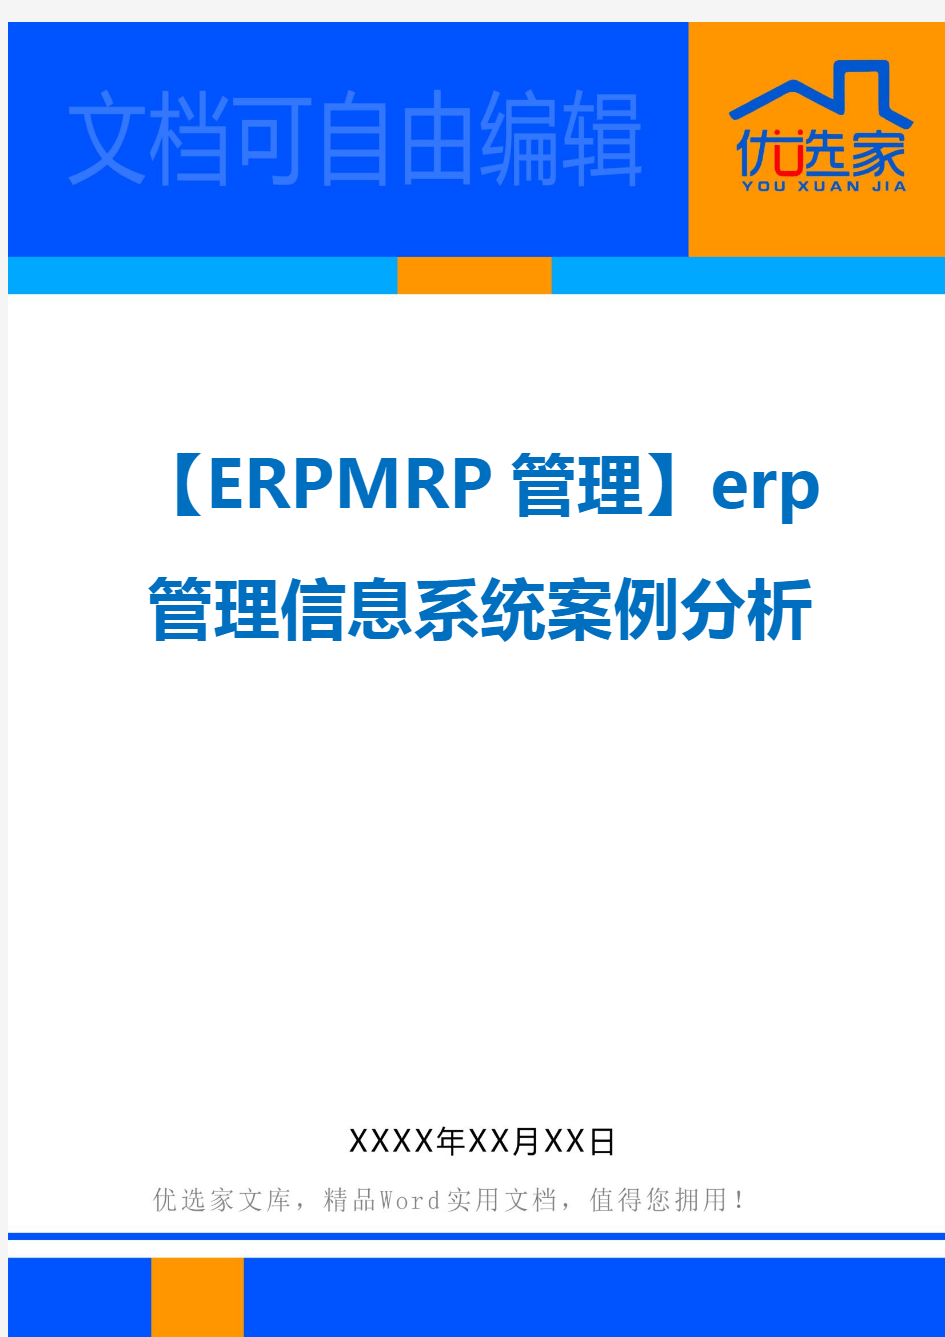 【ERPMRP管理】erp管理信息系统案例分析